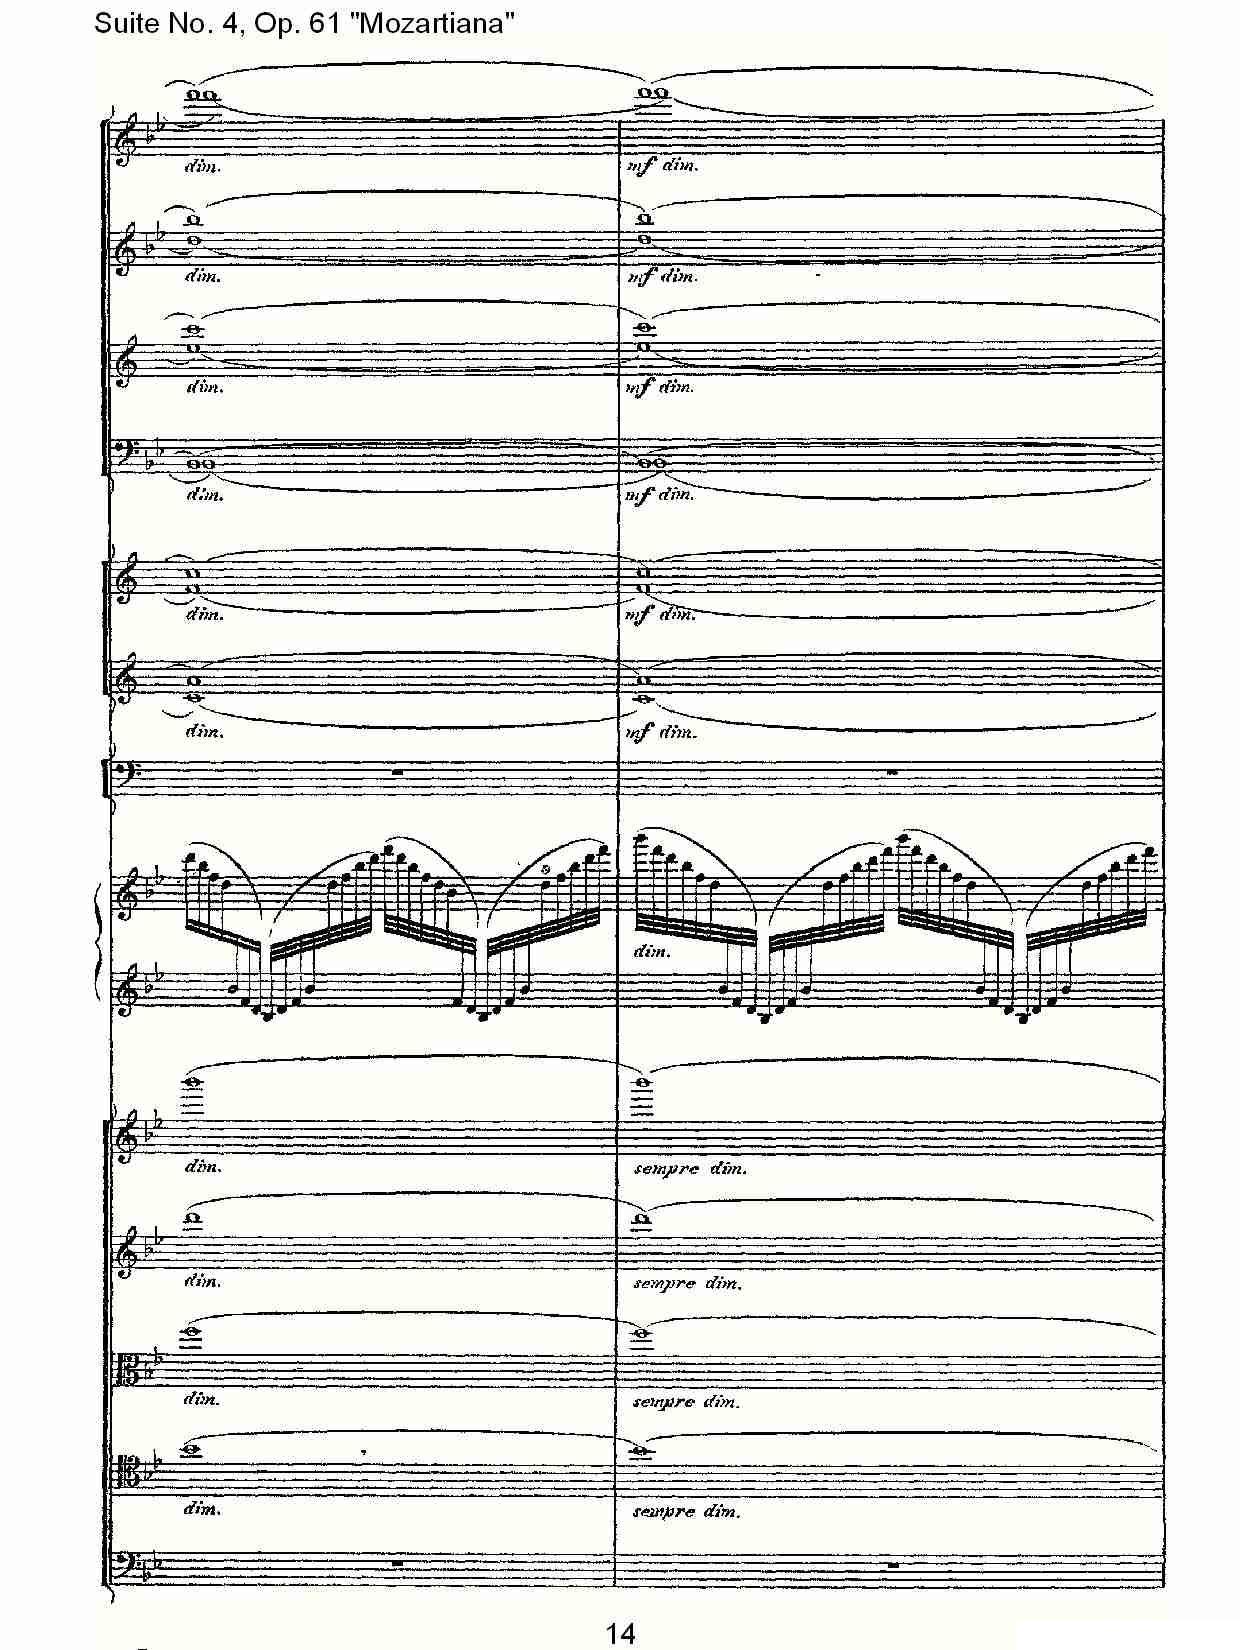 Suite No. 4, Op.61其它曲谱（图14）